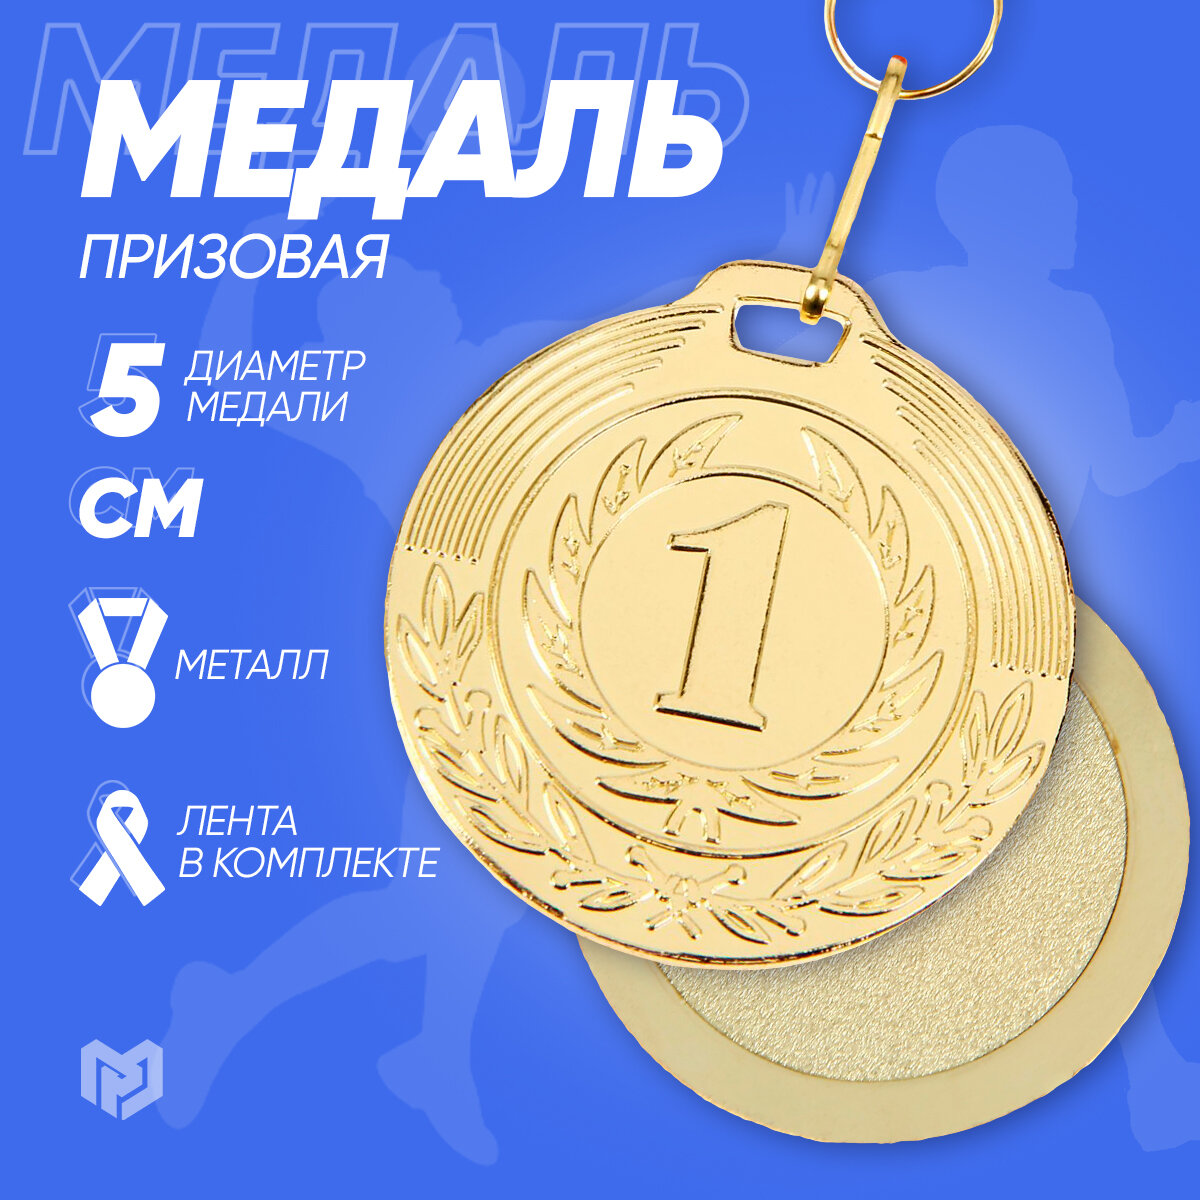 Медаль наградная призовая, 1 место, золотой цвет, диаметр 5 см. С лентой в комплекте.